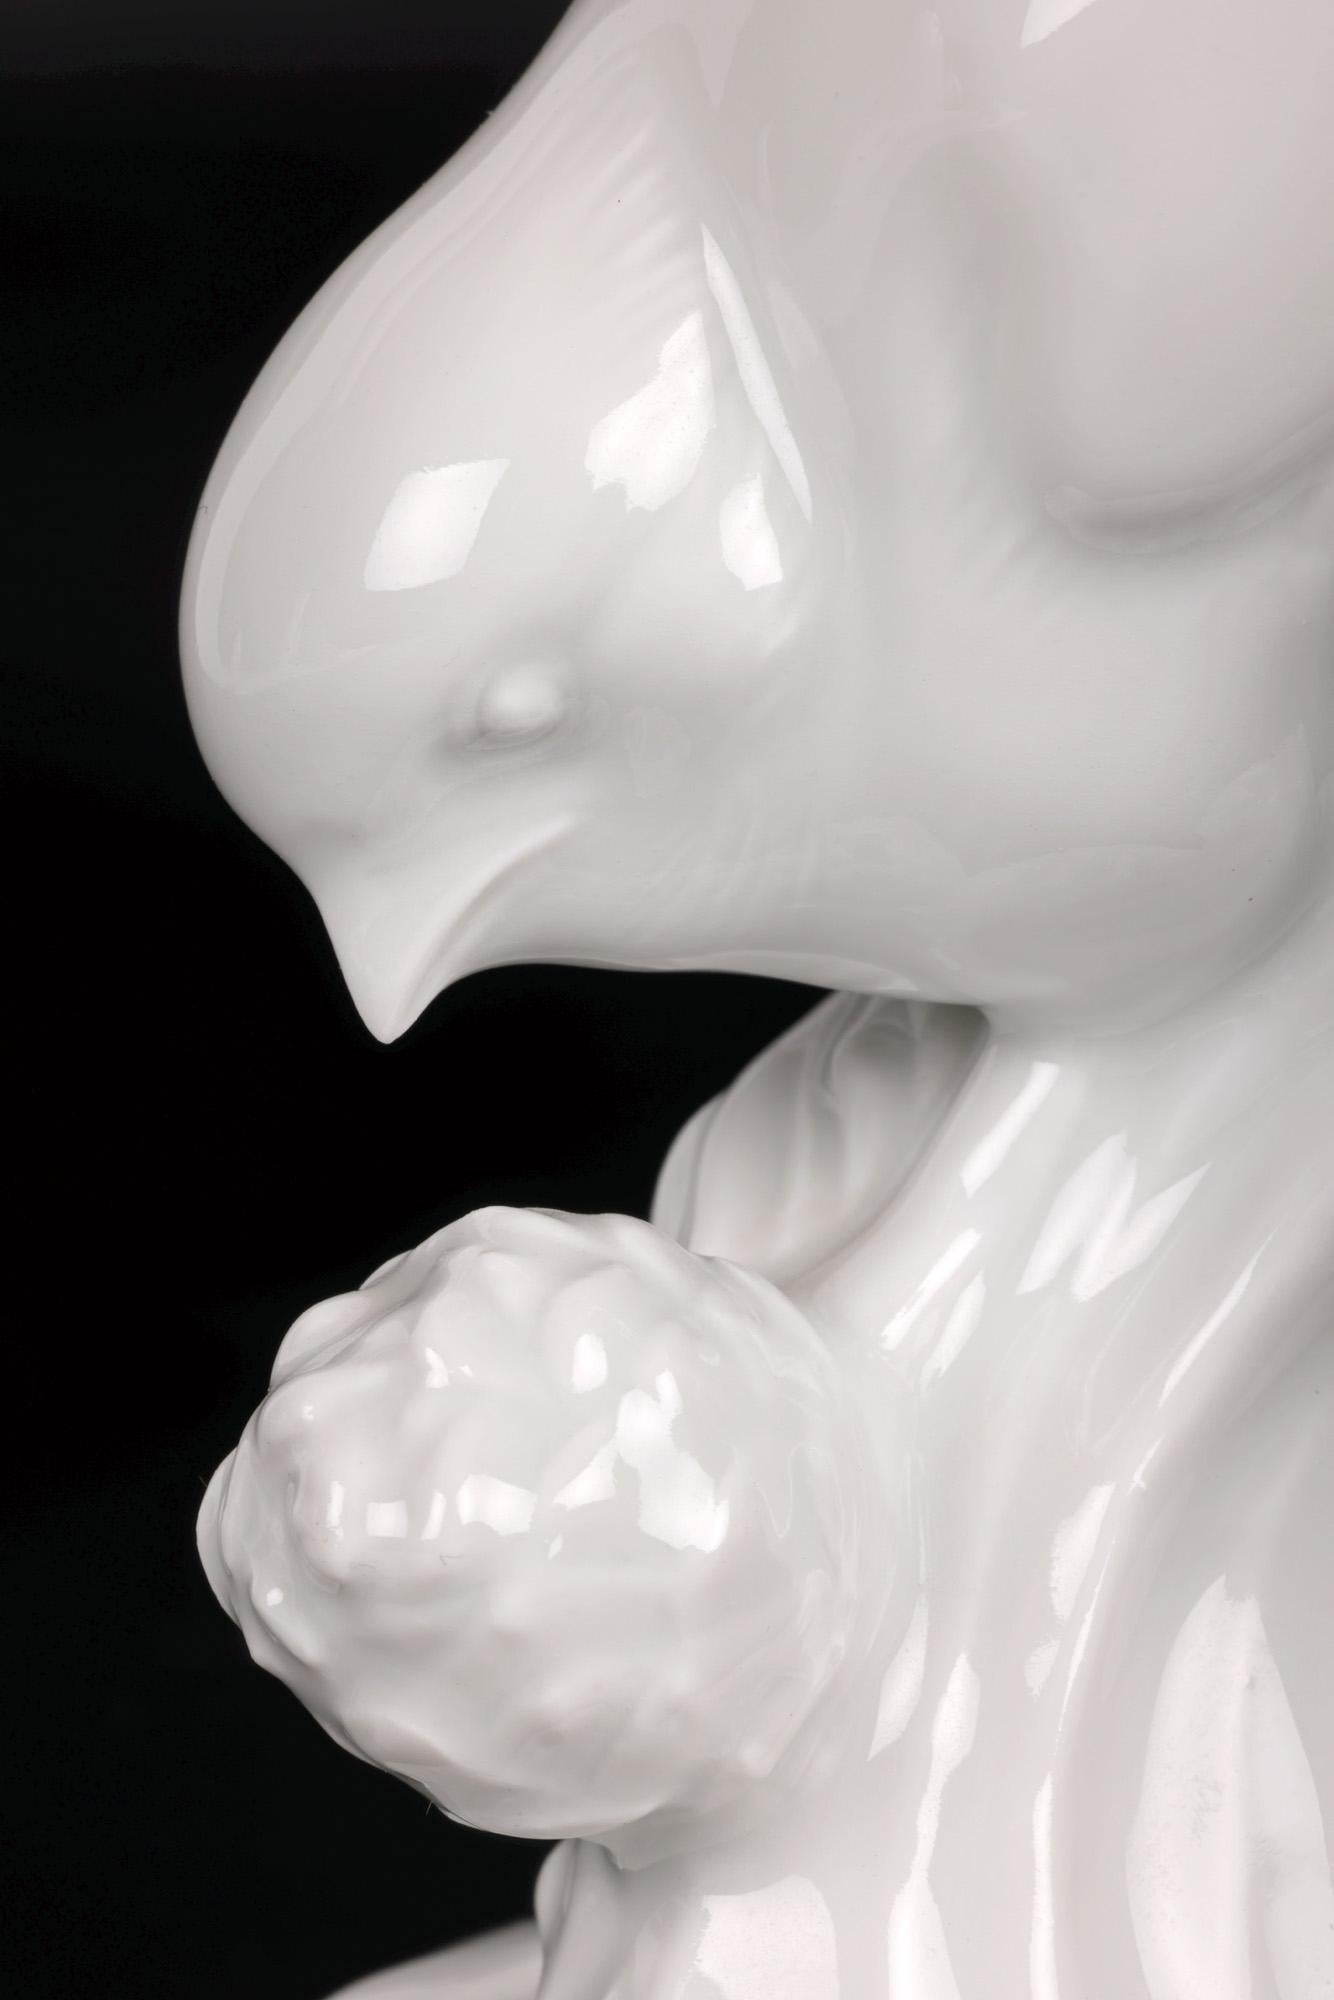 Dans le cadre d'une collection de figurines en blanc et blanc de chine, nous avons le plaisir de vous proposer cette belle figurine d'oiseau de jardin en porcelaine allemande du célèbre fabricant Meissen et datant du 20e siècle. Cette figurine de